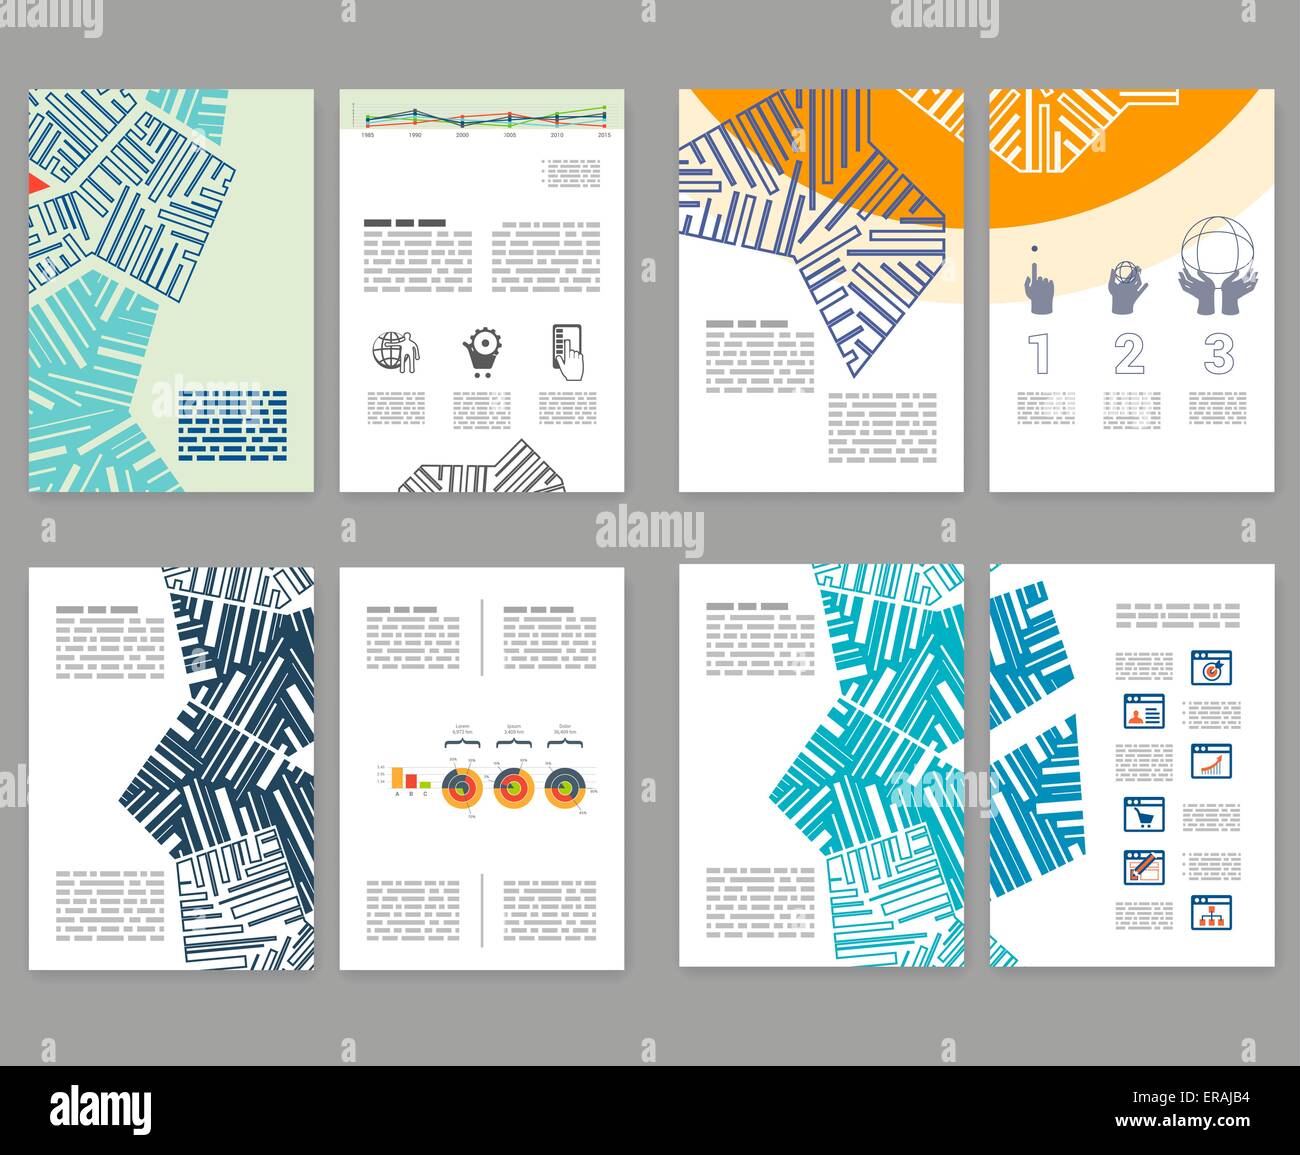 Flyer Broschure Broschure Layout Set Editierbare Design Vorlage 2 Fold Broschure Mit Abstrakten Elementen Infografiken Stock Vektorgrafik Alamy